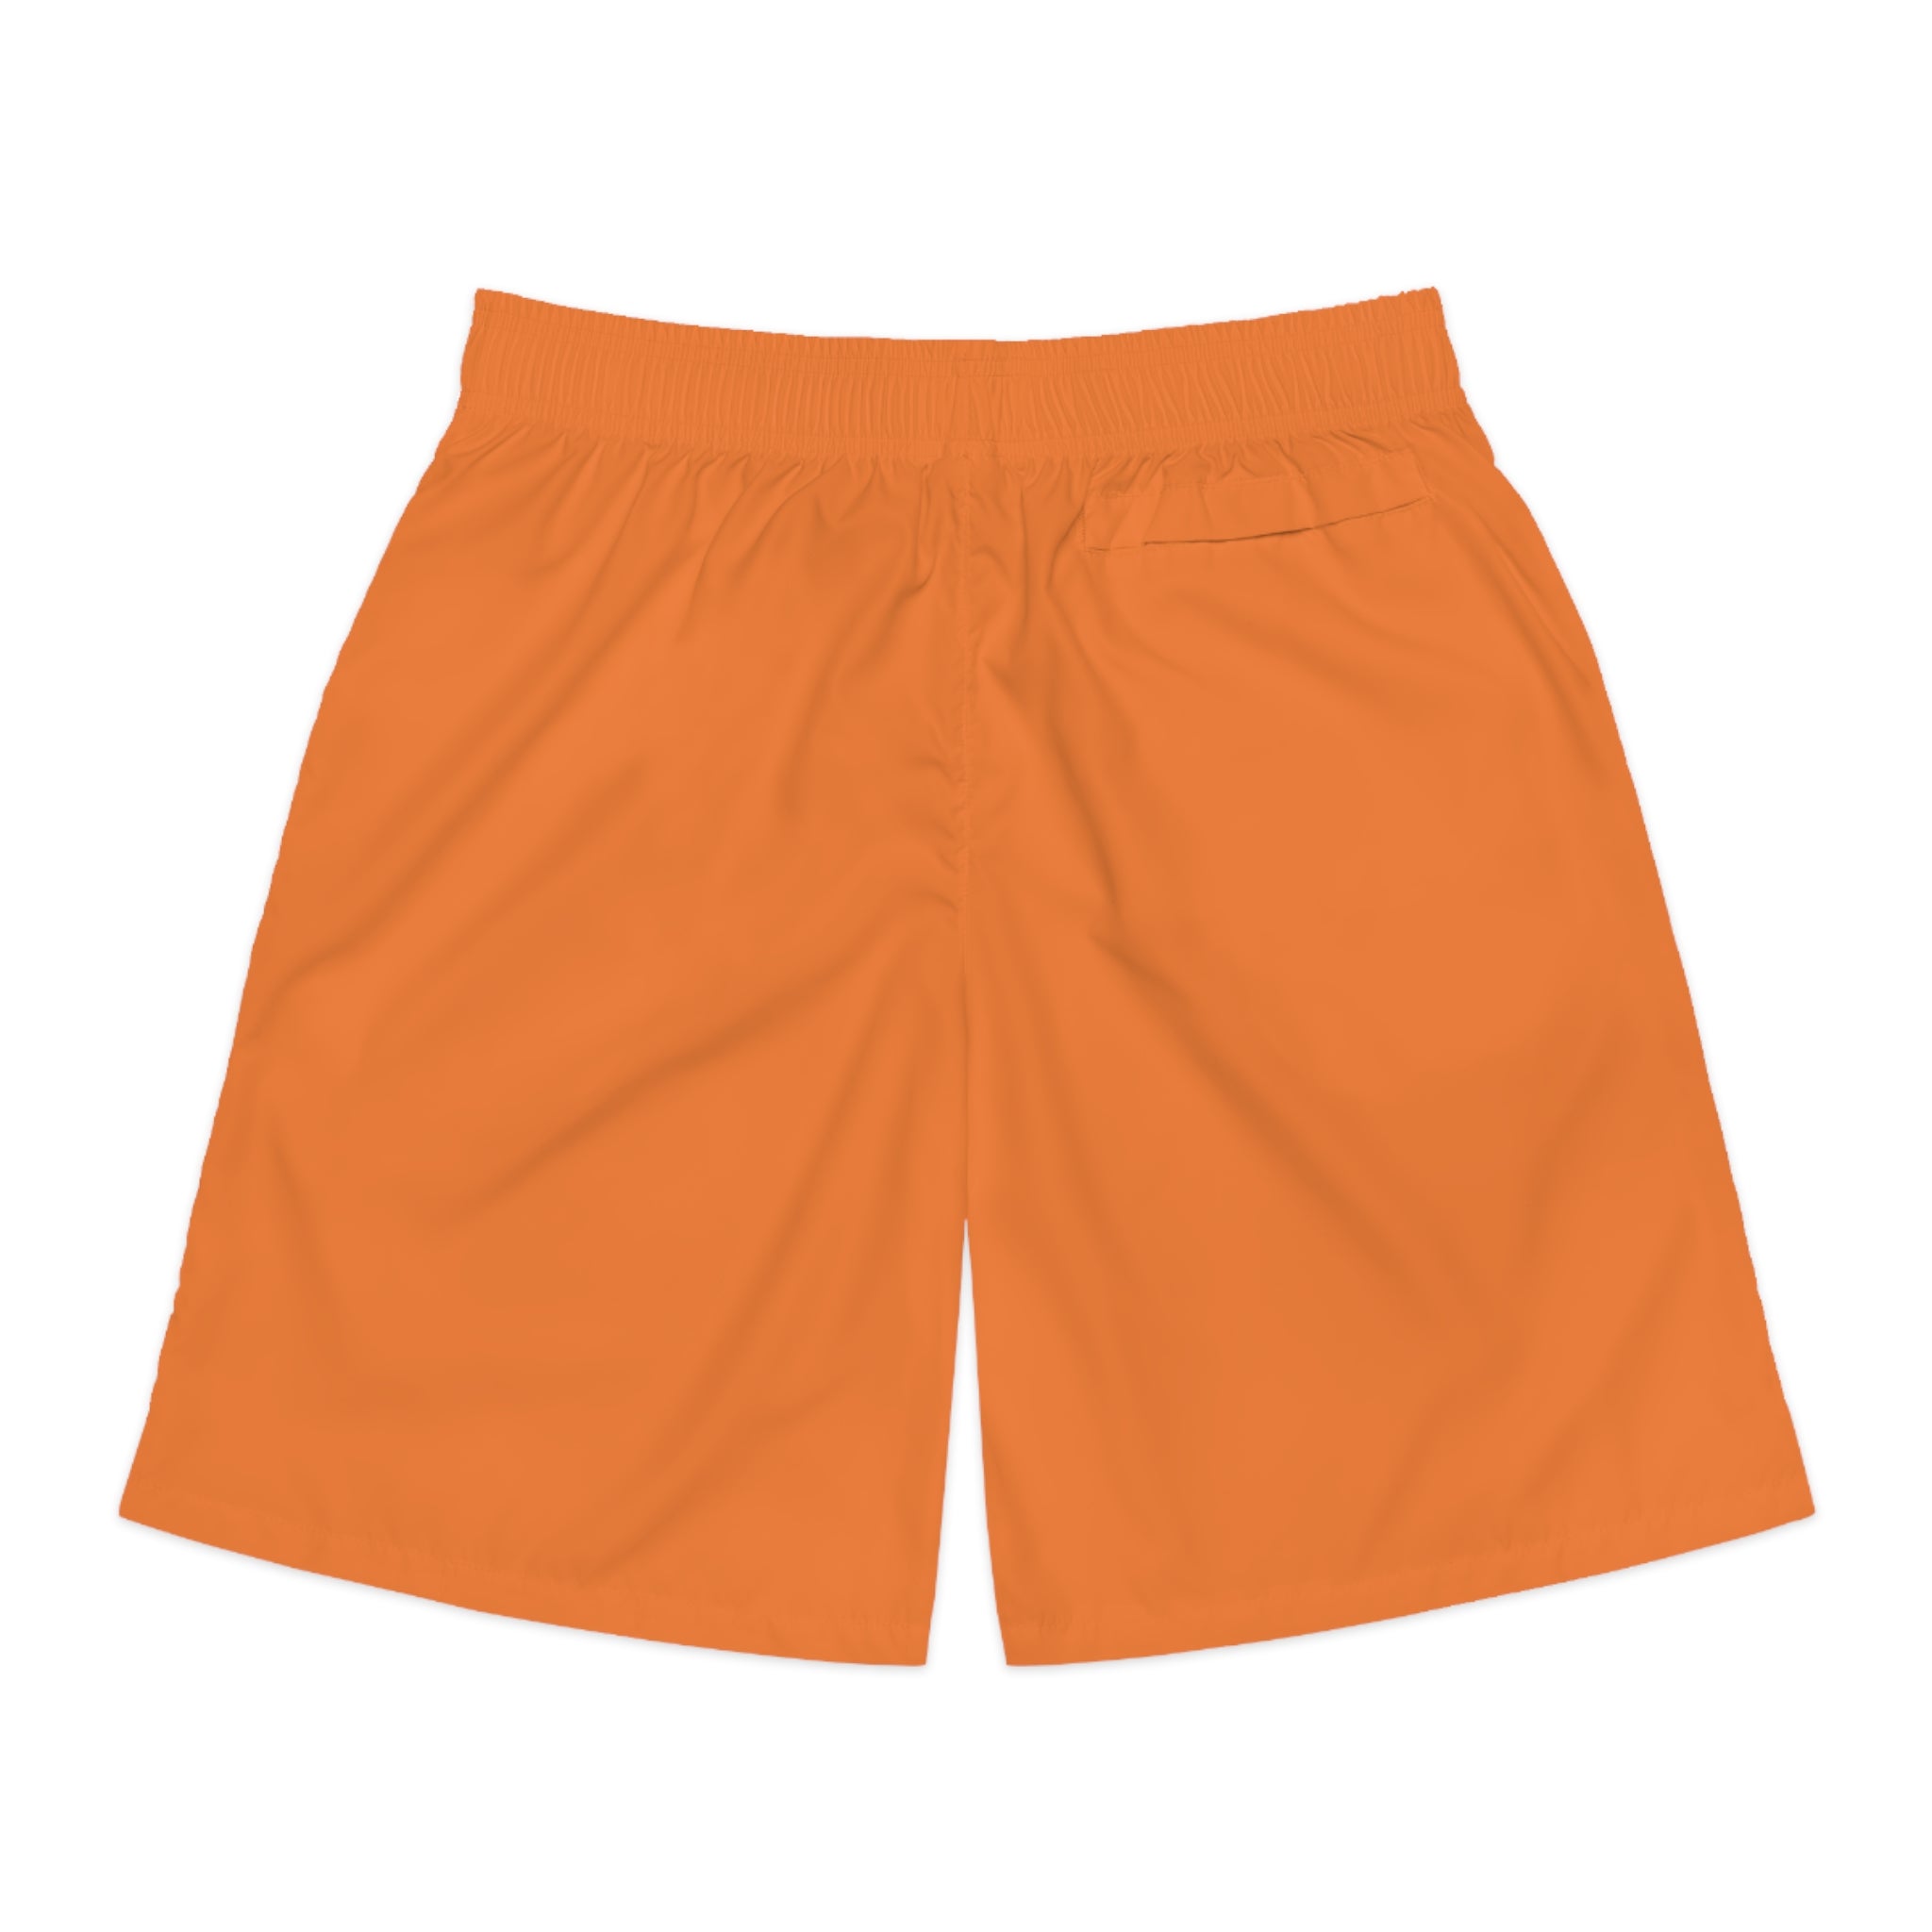 Dragon shorts (Crusta) - Men's Jogger Shorts